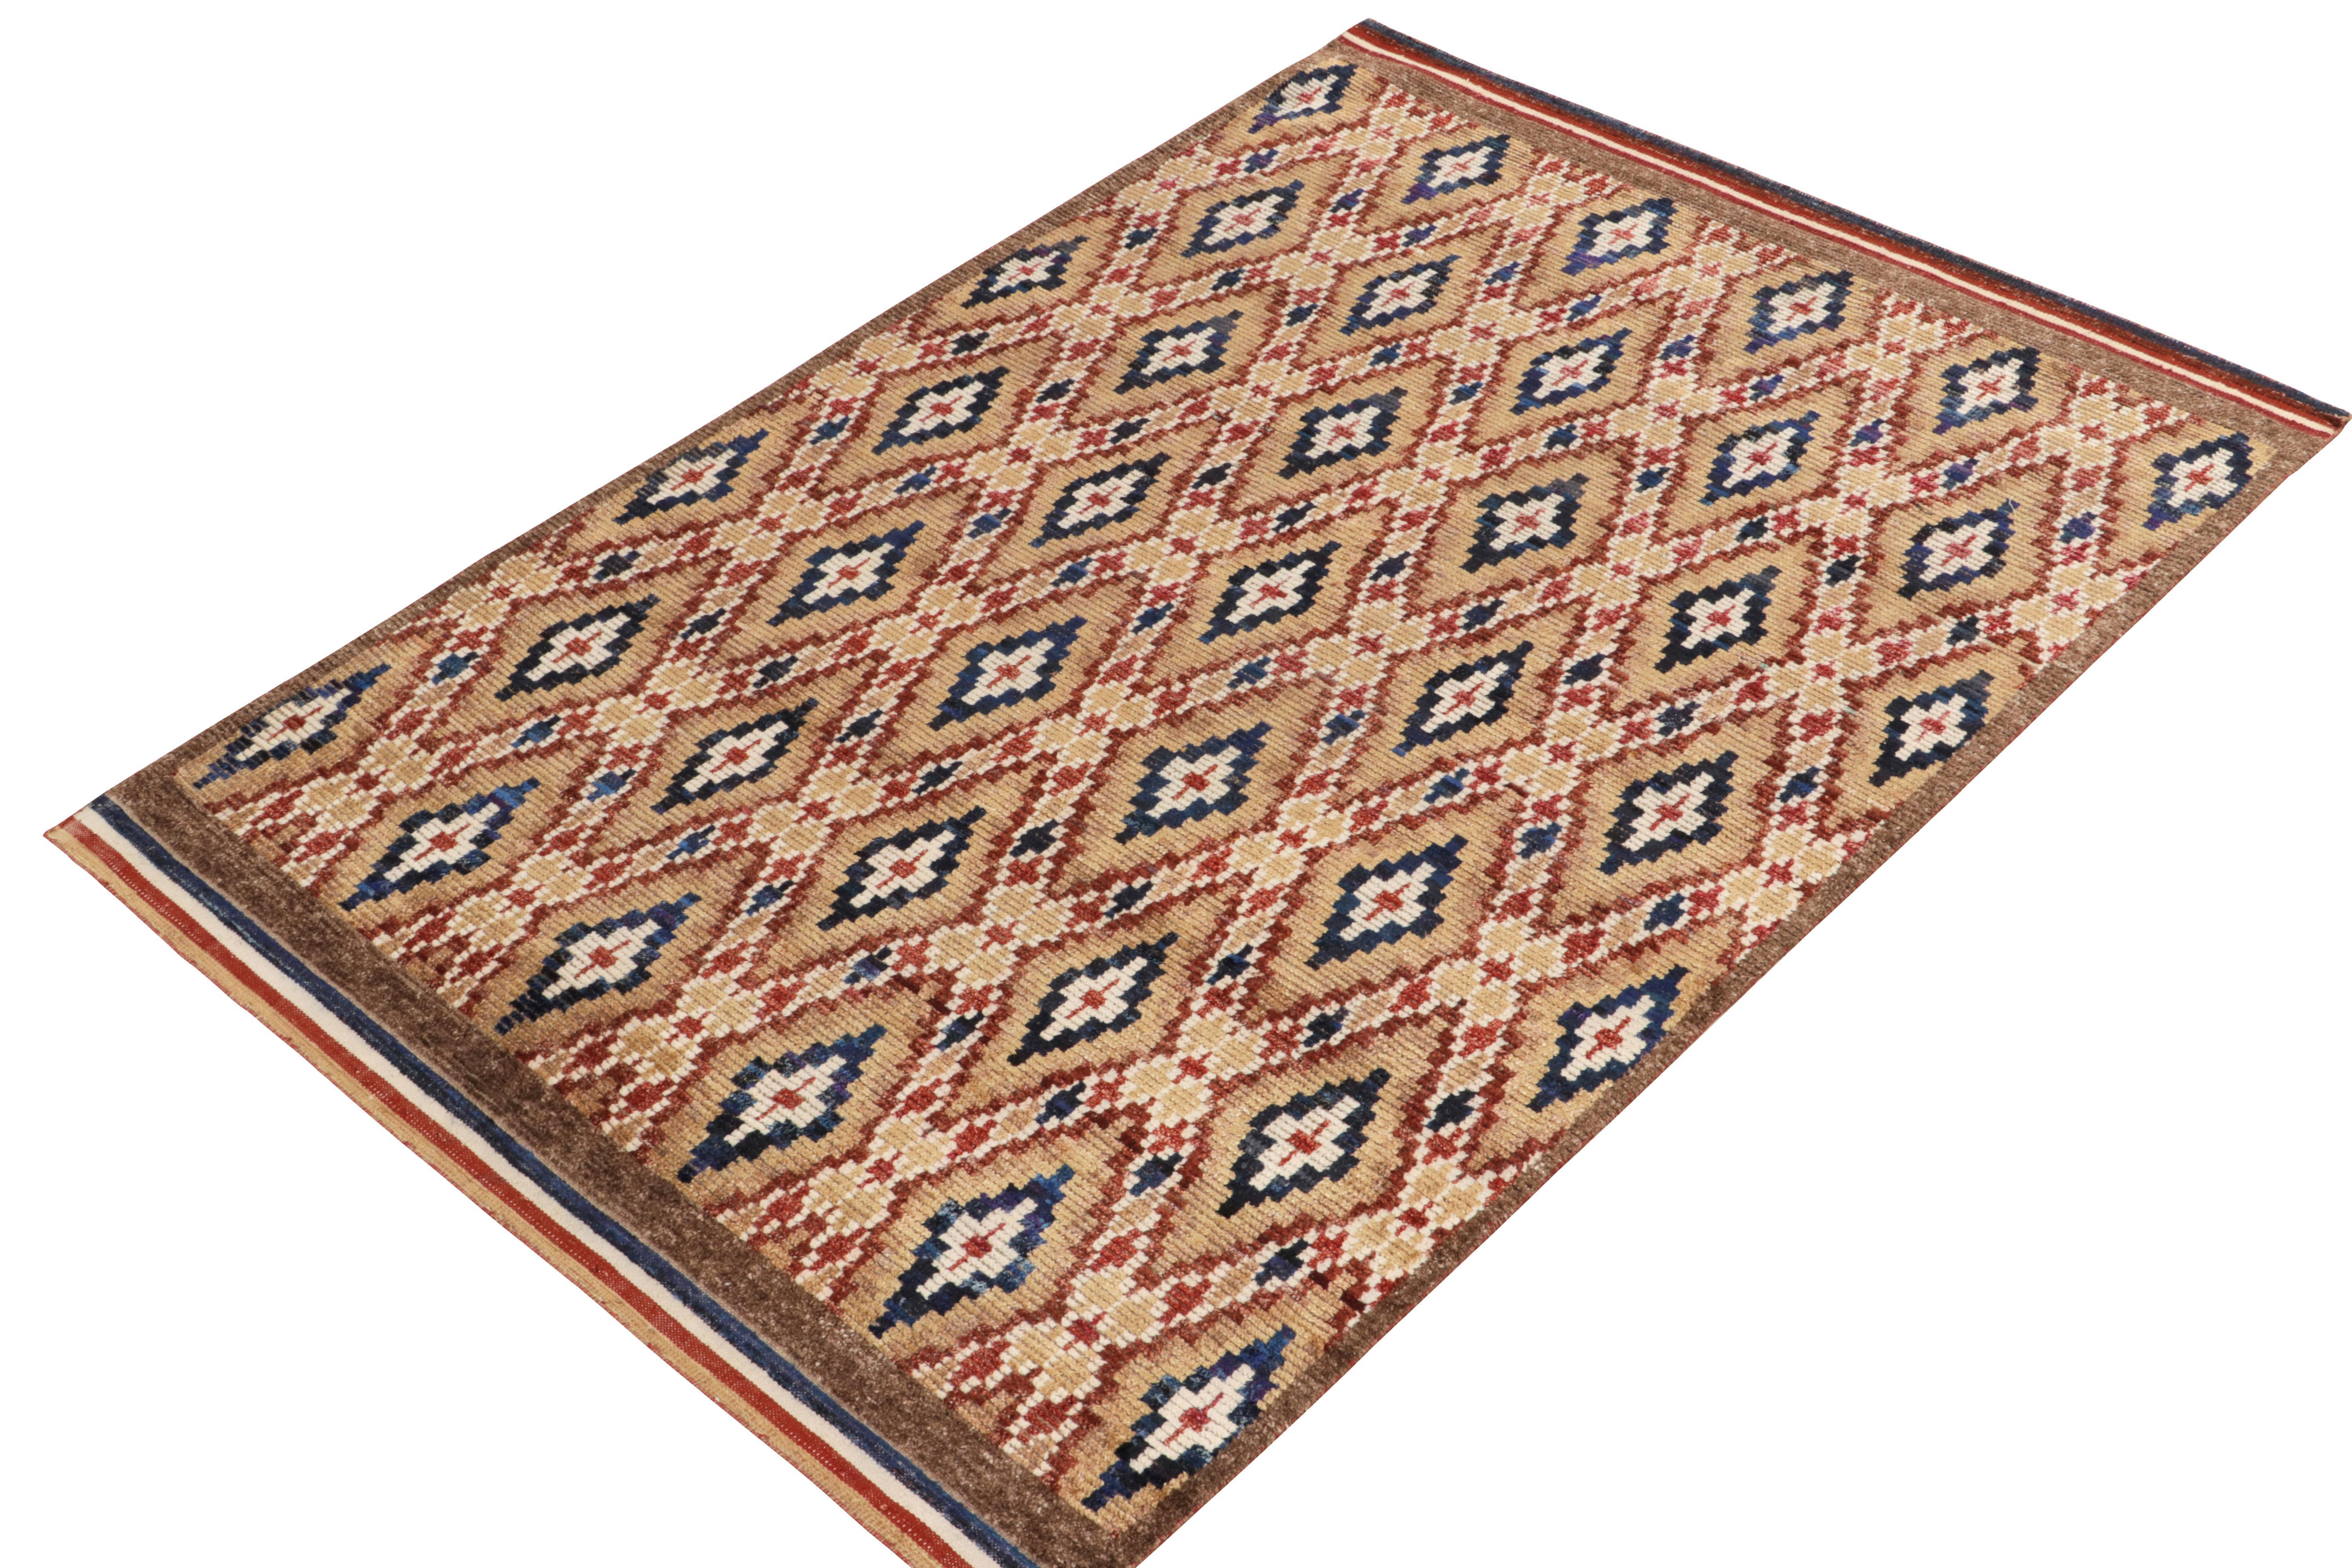 Marokkanischer Teppich von Rug & Kilim in Beige-Braun, Rot und Blau mit Rautenmustern (Stammeskunst) im Angebot